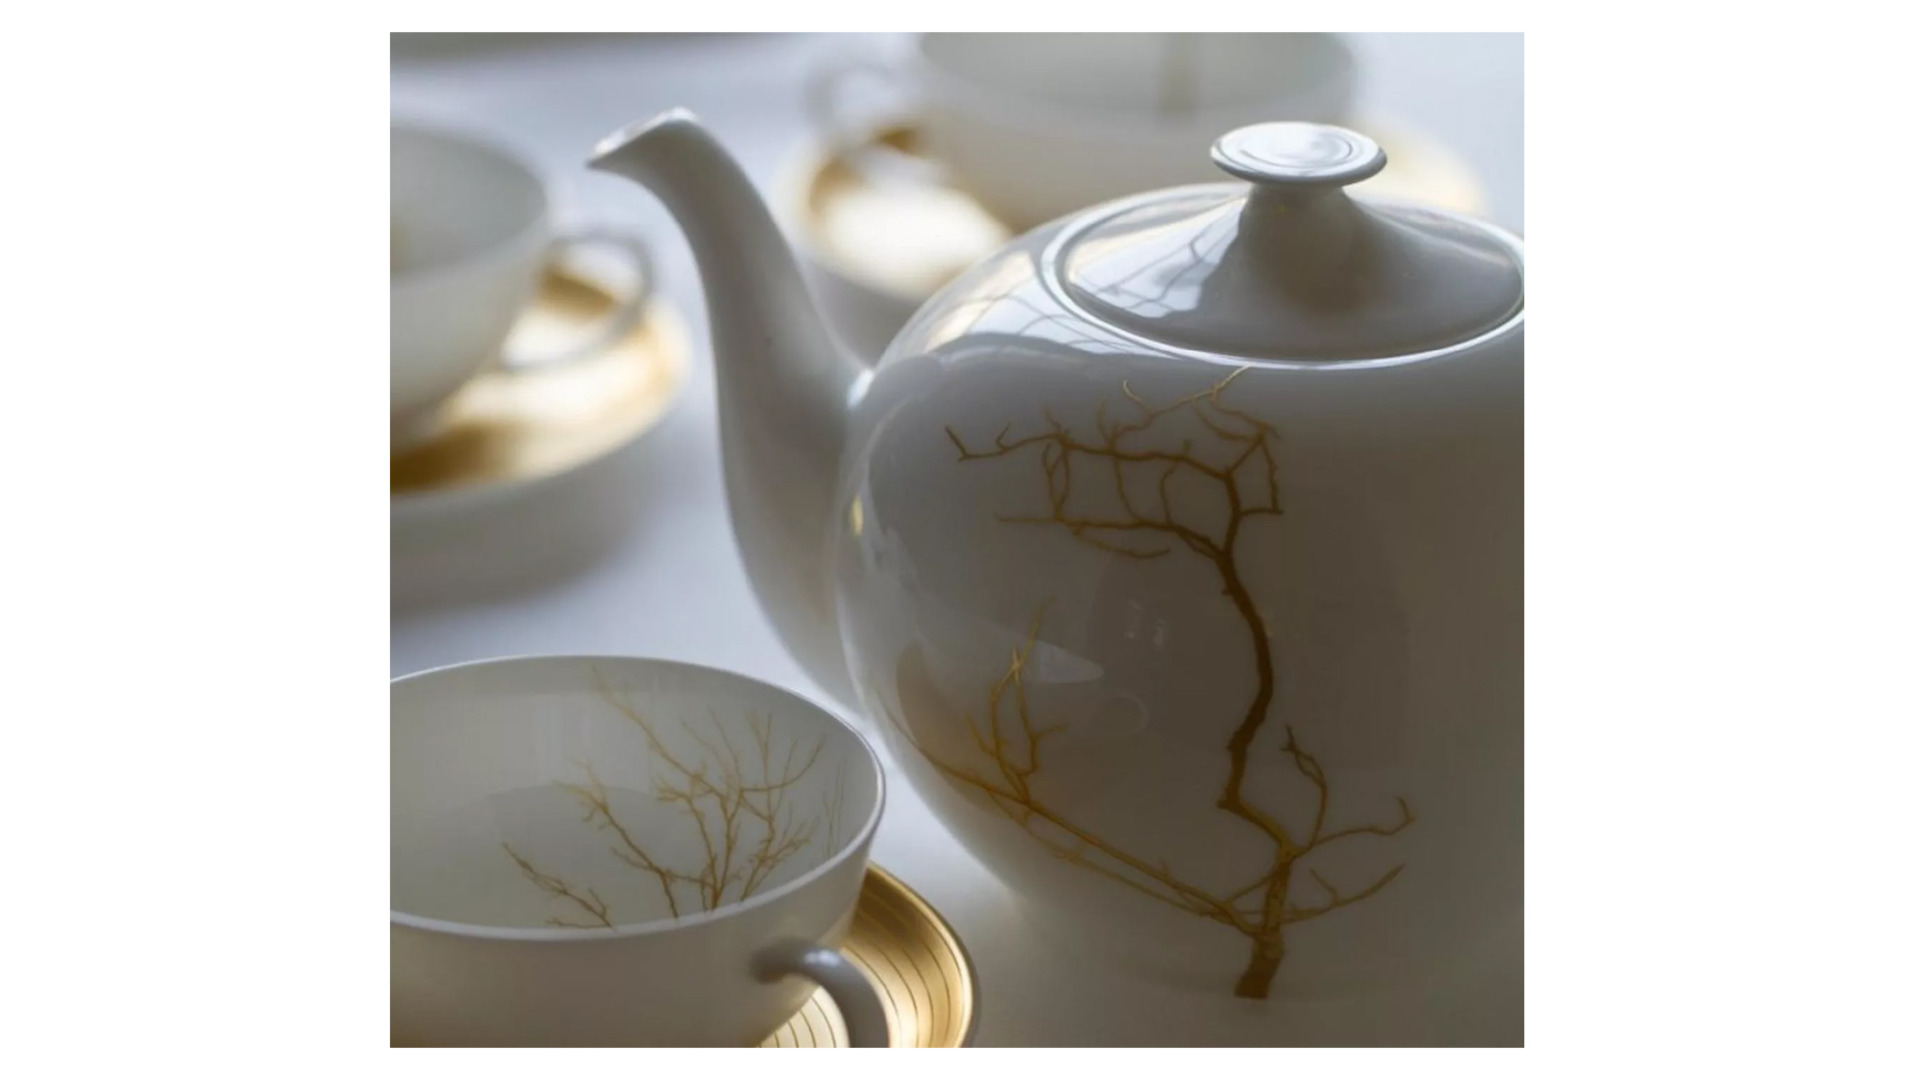 Чашка чайно-кофейная Dibbern Золотой лес 250 мл, фарфор костяной